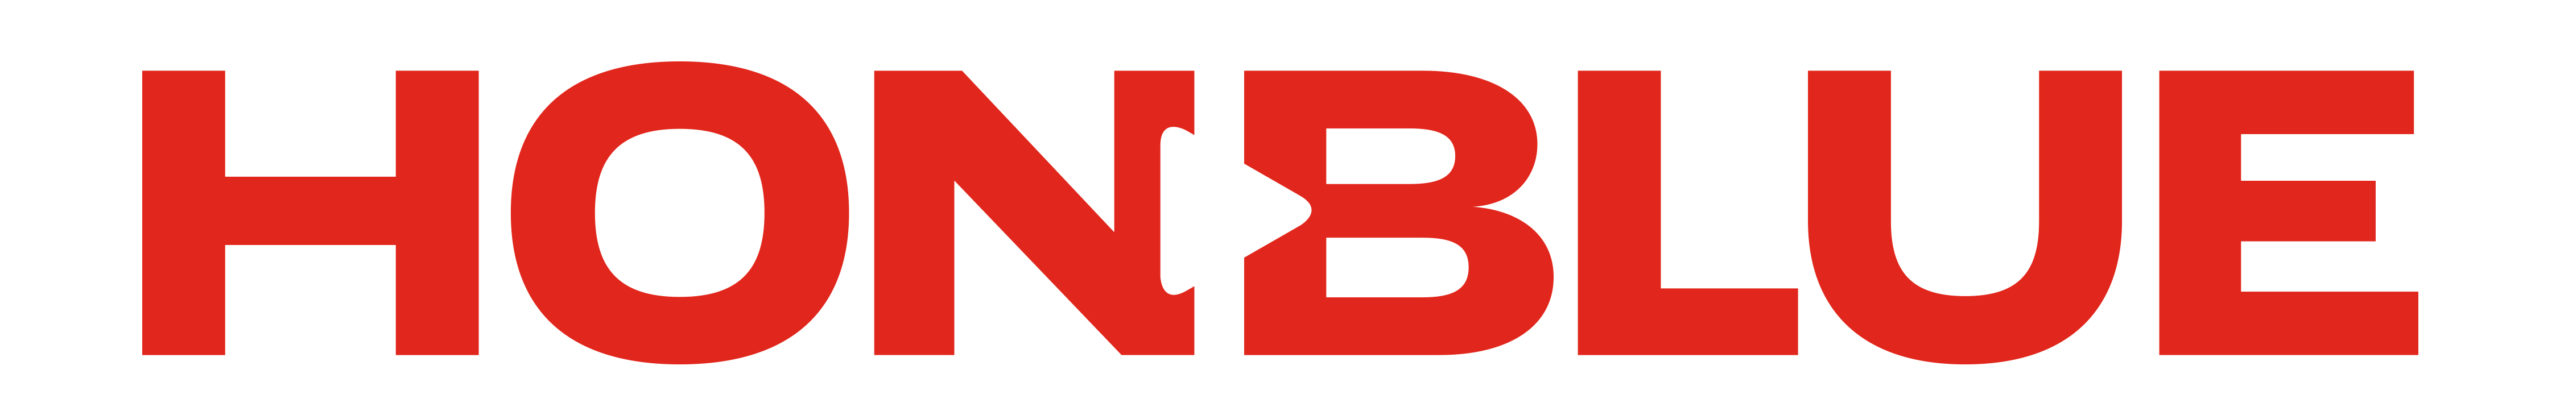 HB19 Logo_RED